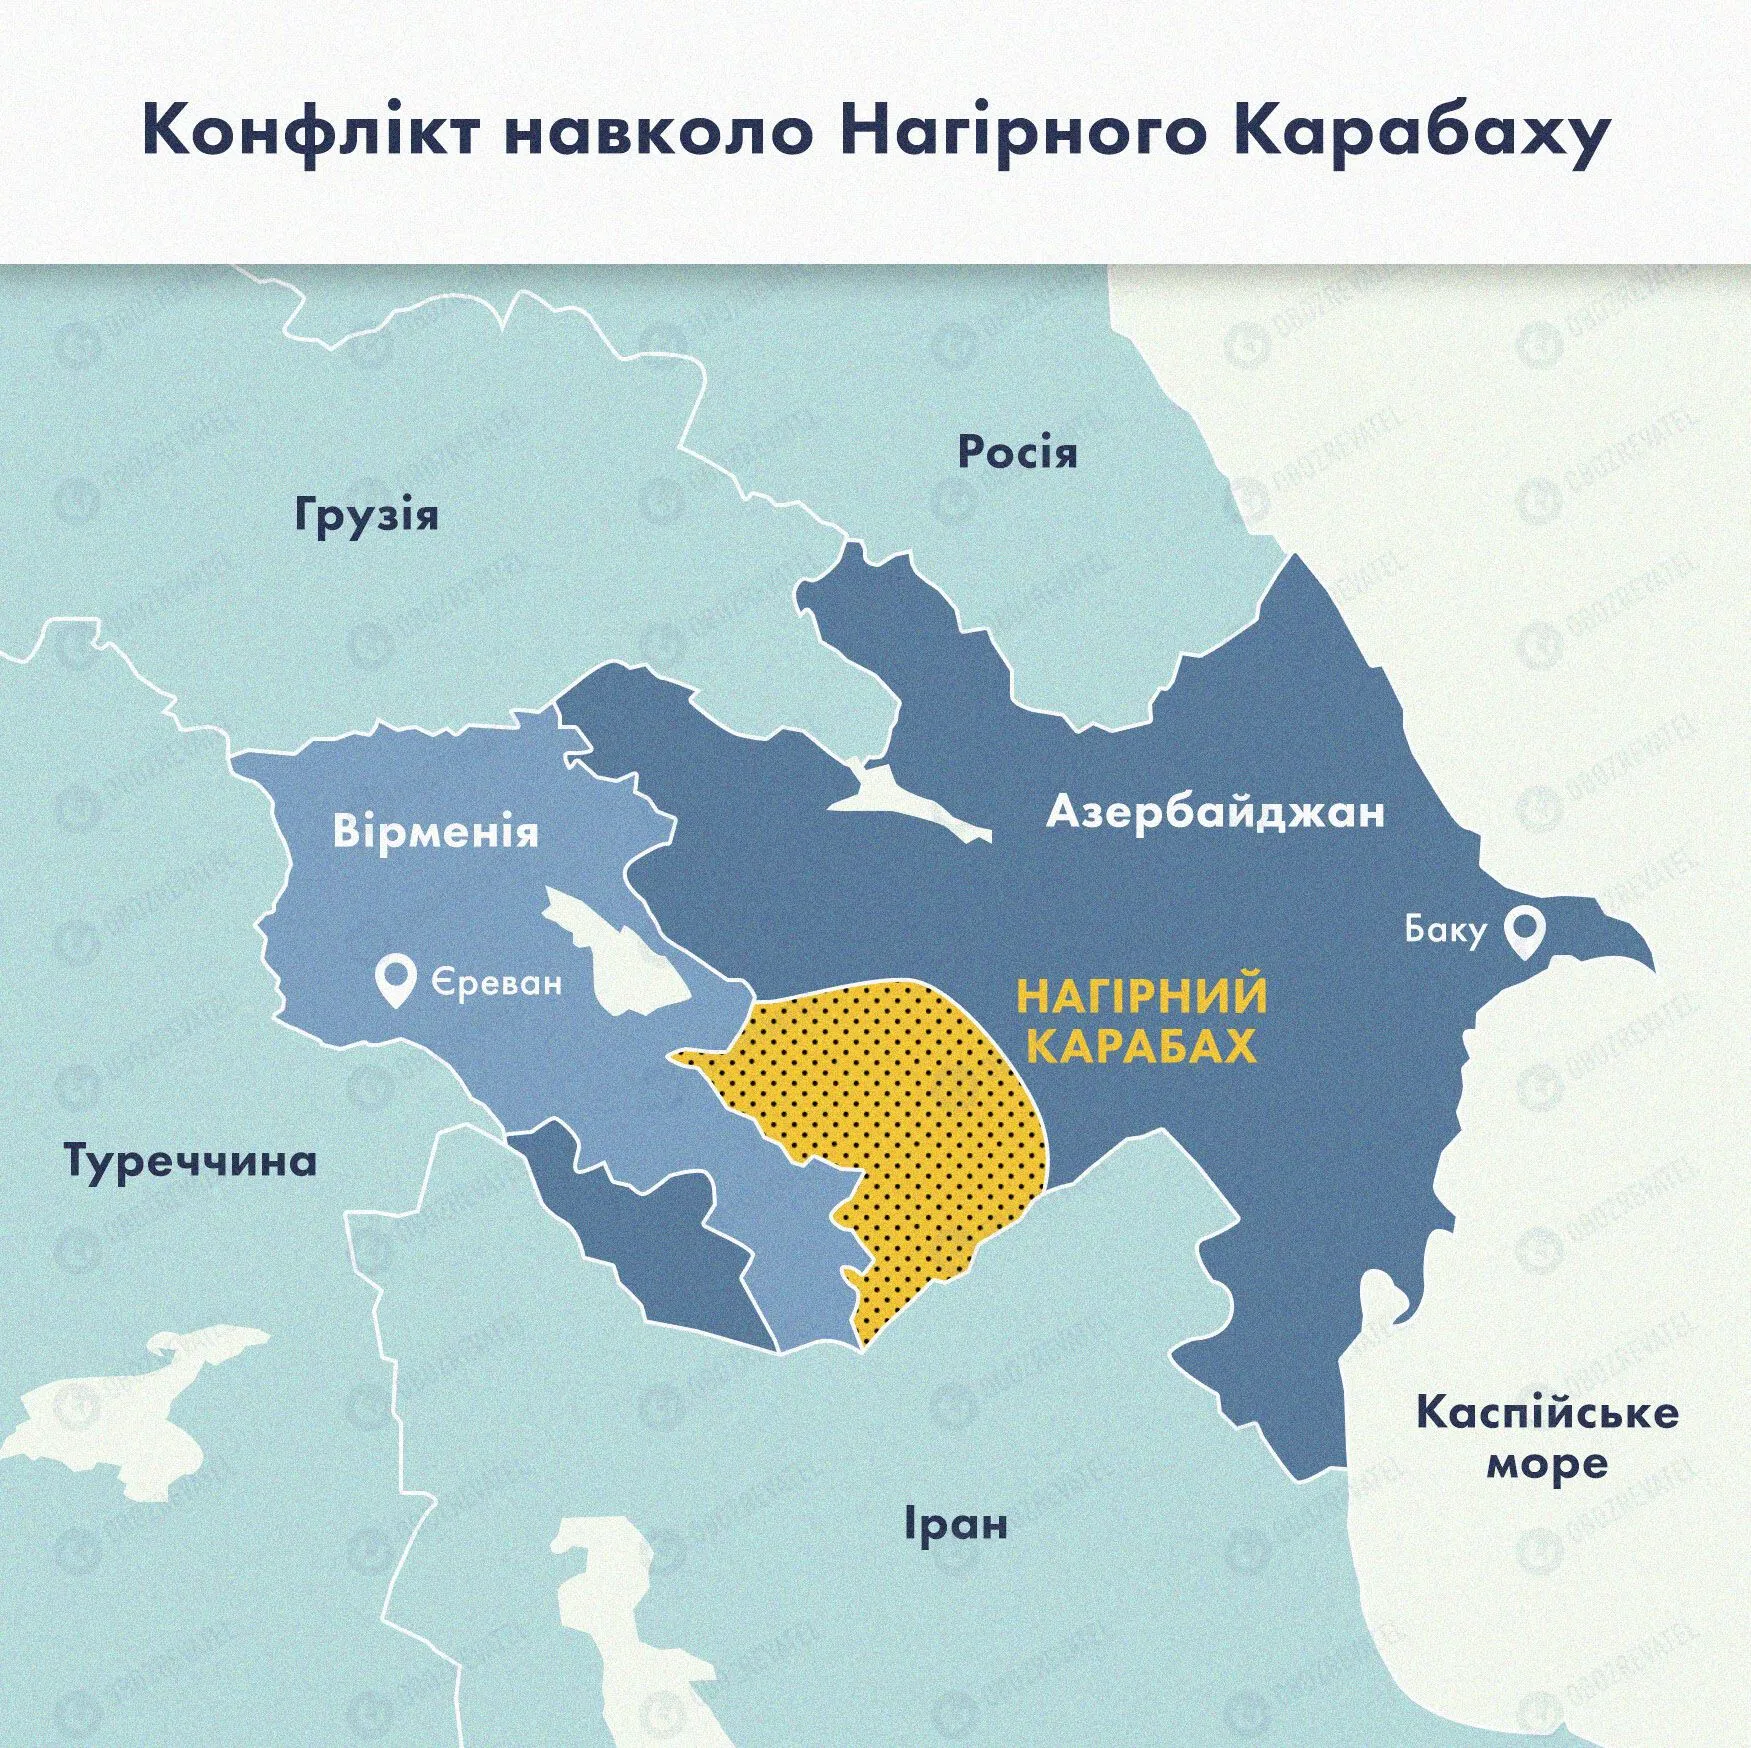 Карта конфликта в Нагорном Карабахе